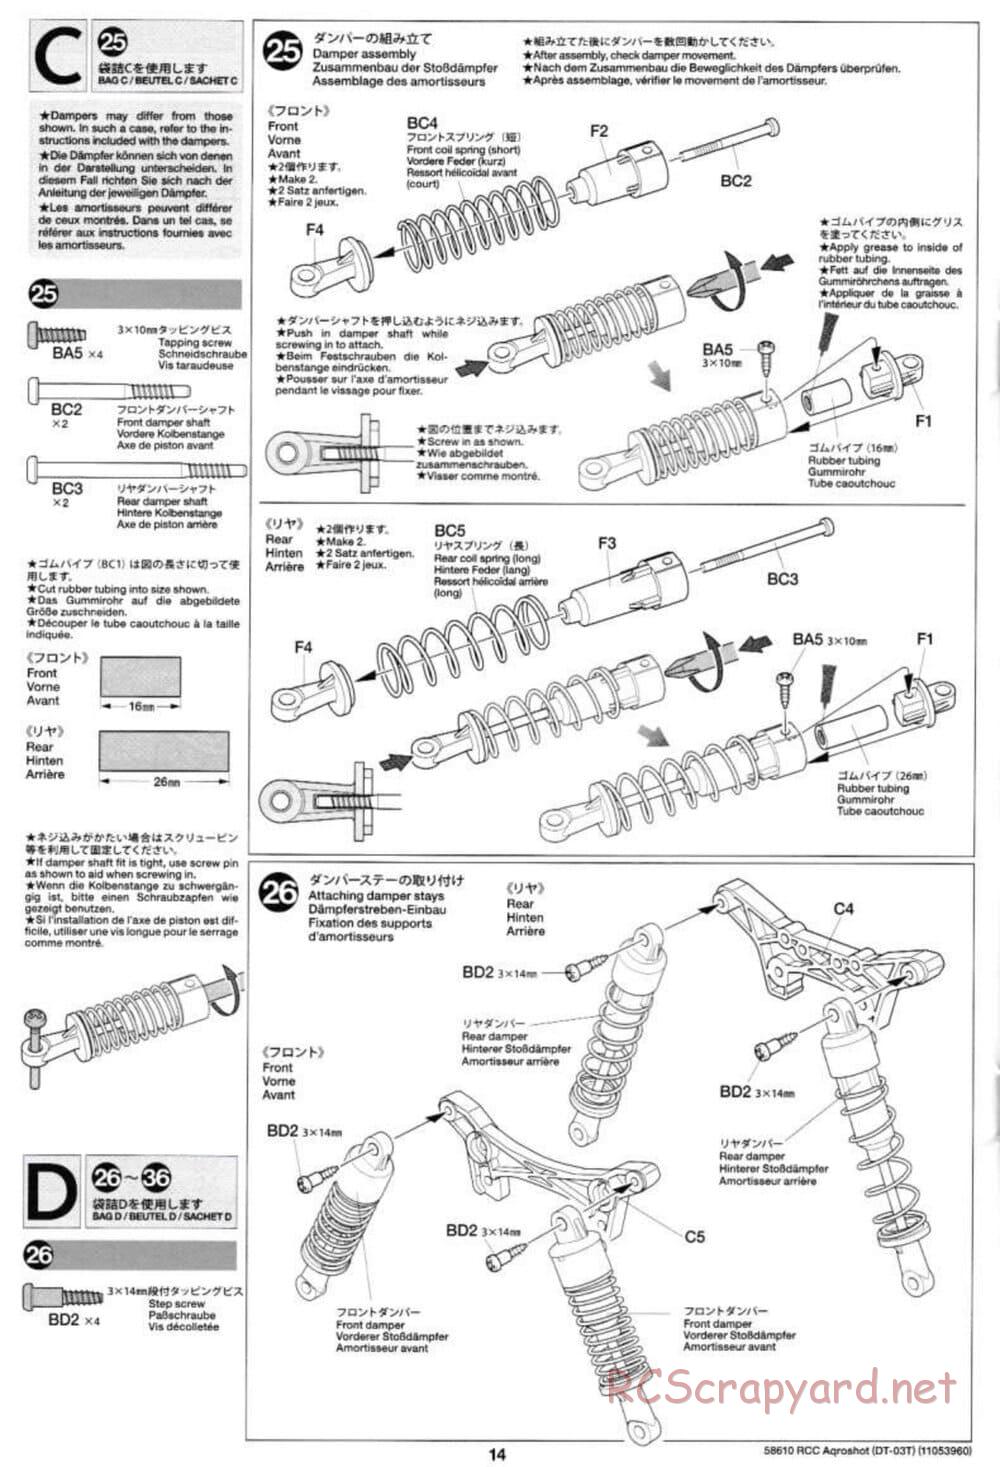 Tamiya - Aqroshot Chassis - Manual - Page 14